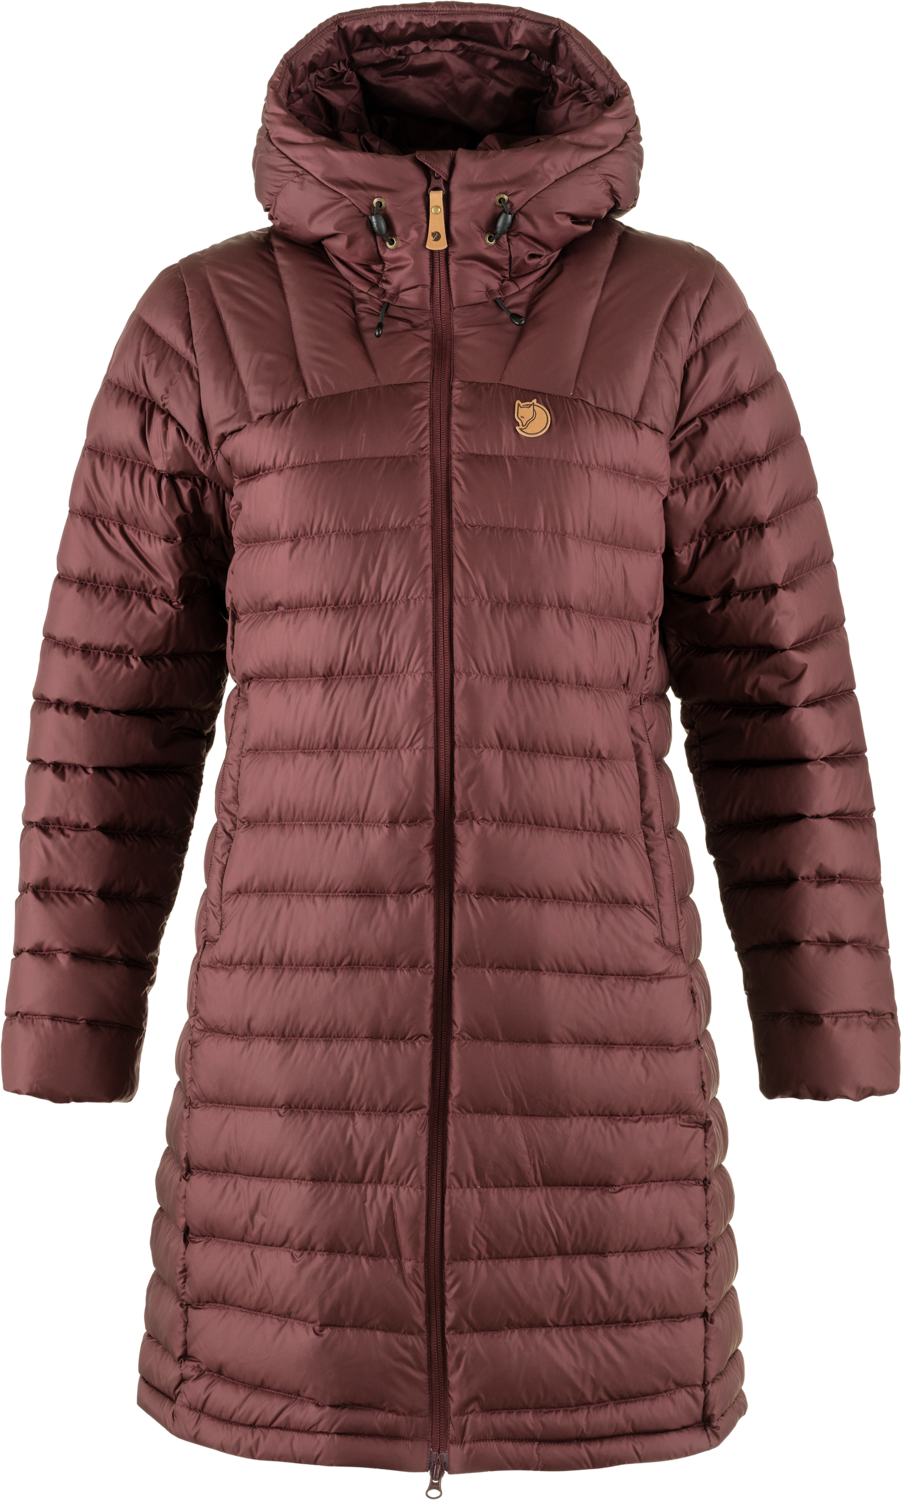  Snow Flake Parka W Deep Sea - women's winter jacket -  FJÄLLRÄVEN - 320.34 € - outdoorové oblečení a vybavení shop